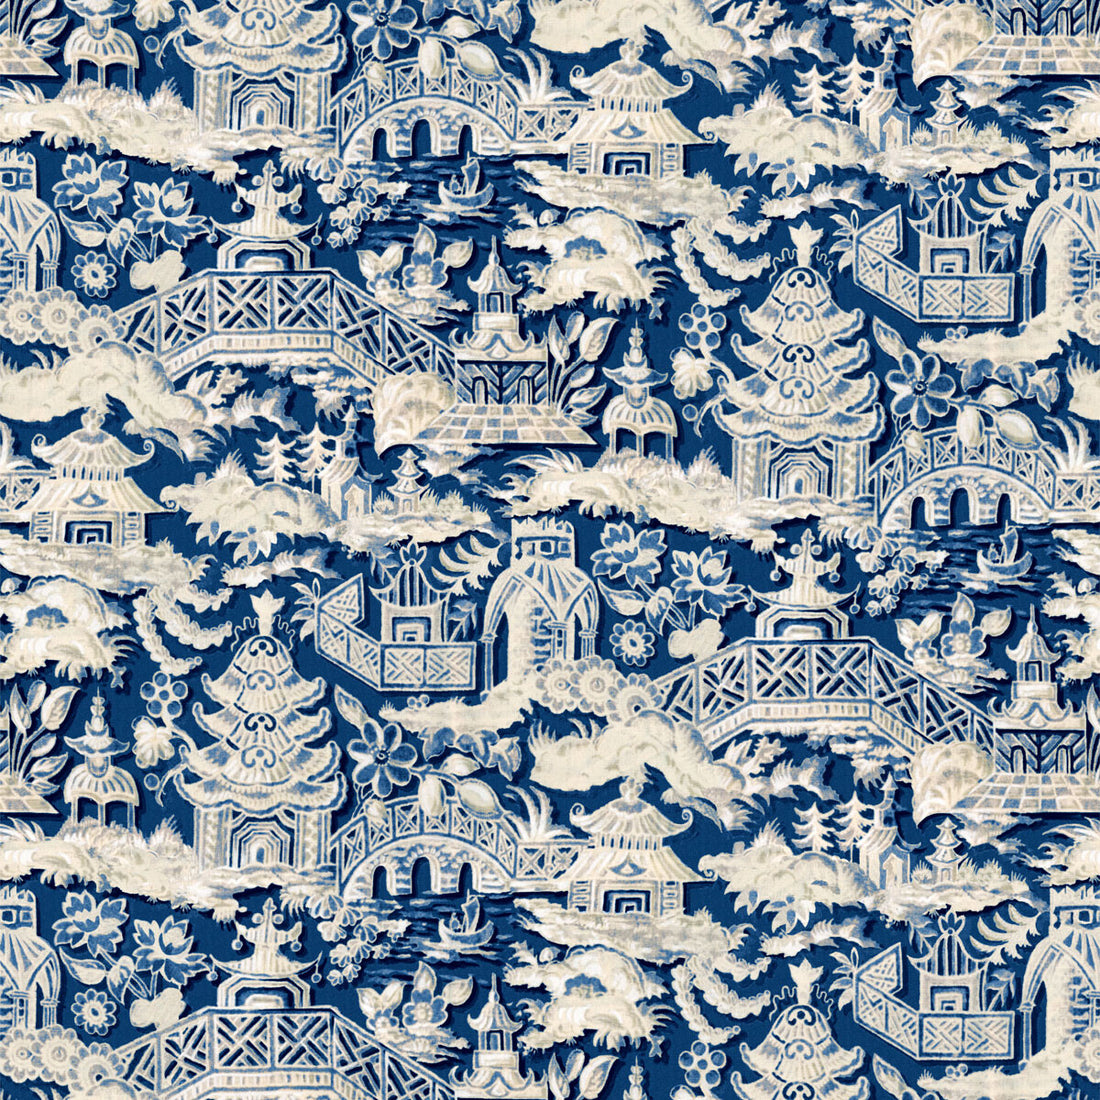 Marta fabric in azul color - pattern LCT1048.003.0 - by Gaston y Daniela in the Lorenzo Castillo VI collection